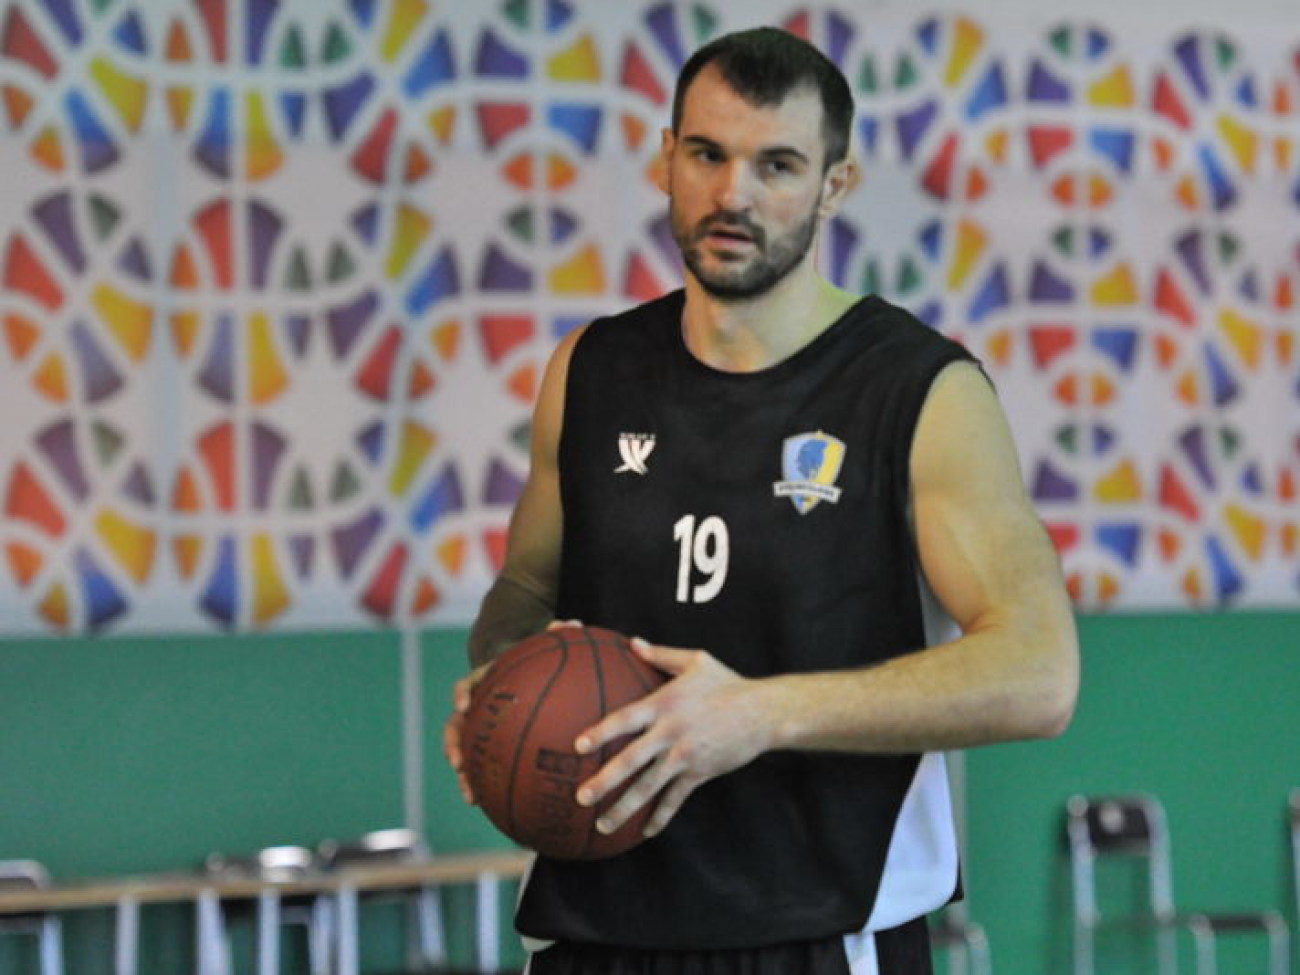 Накануне Финала четырех Кубка Украины по баскетболу «Будивельник» провел открытую тренировку